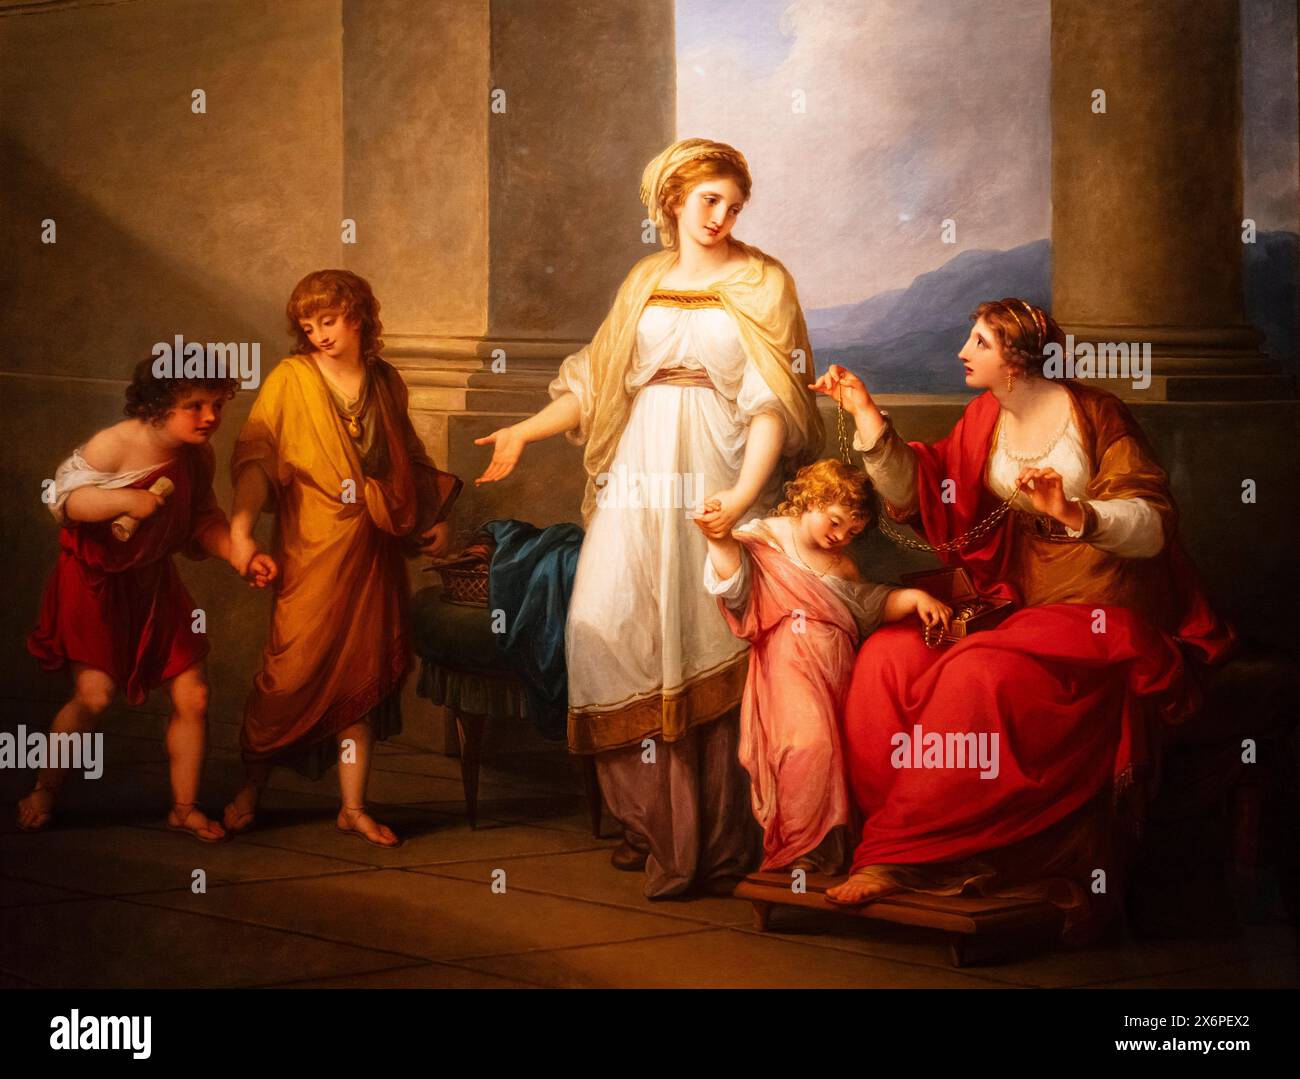 Angelica Kauffmann, Cornelia, mère des Gracchi, montrant ses enfants comme ses trésors, vers 1785, huile sur toile, Virginia Museum of Fine Arts, Richmond. Banque D'Images